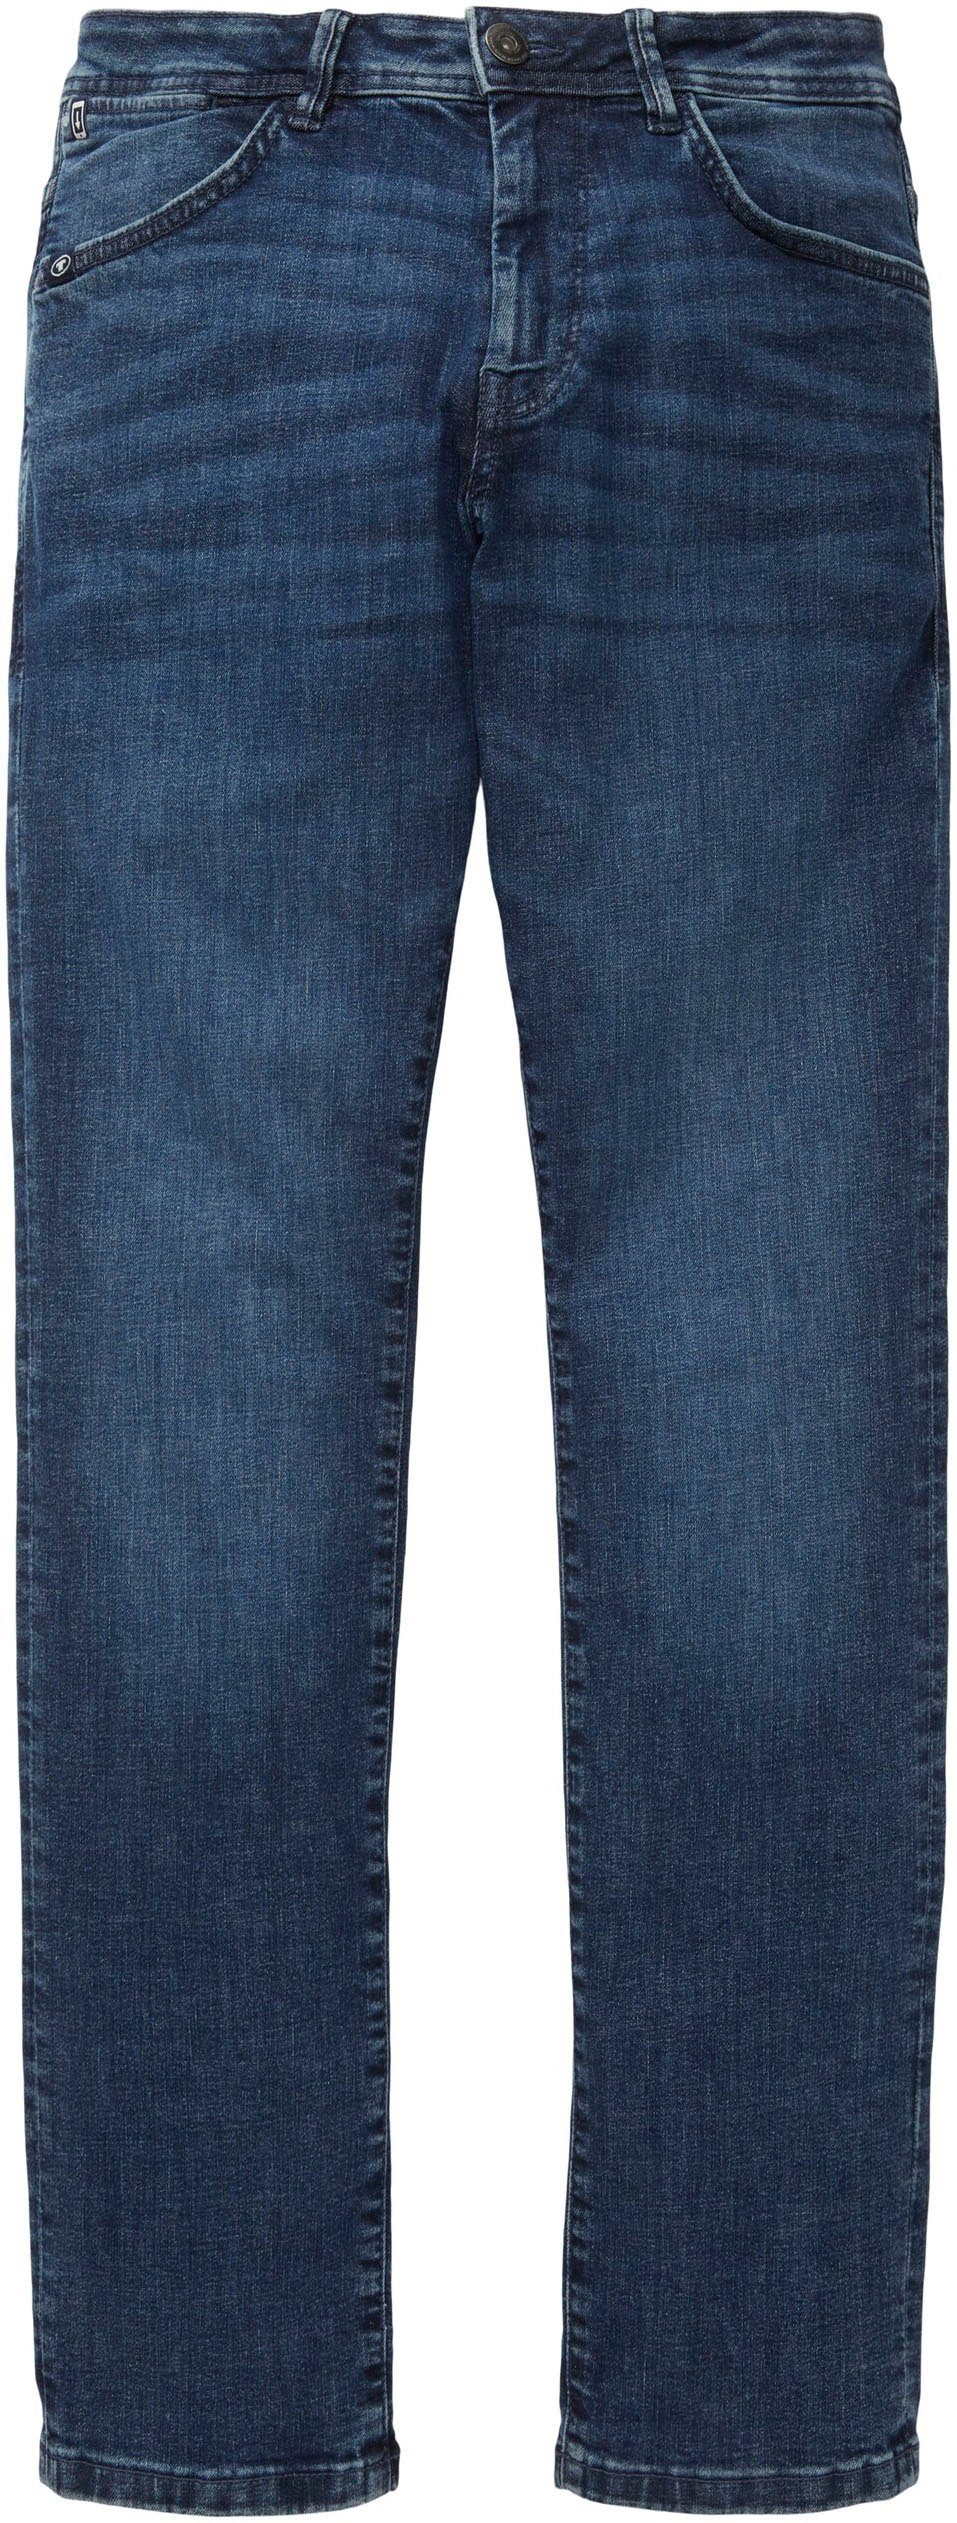 lässiger in Slim-fit-Jeans blue stone JOSH Optik TOM used TAILOR mid